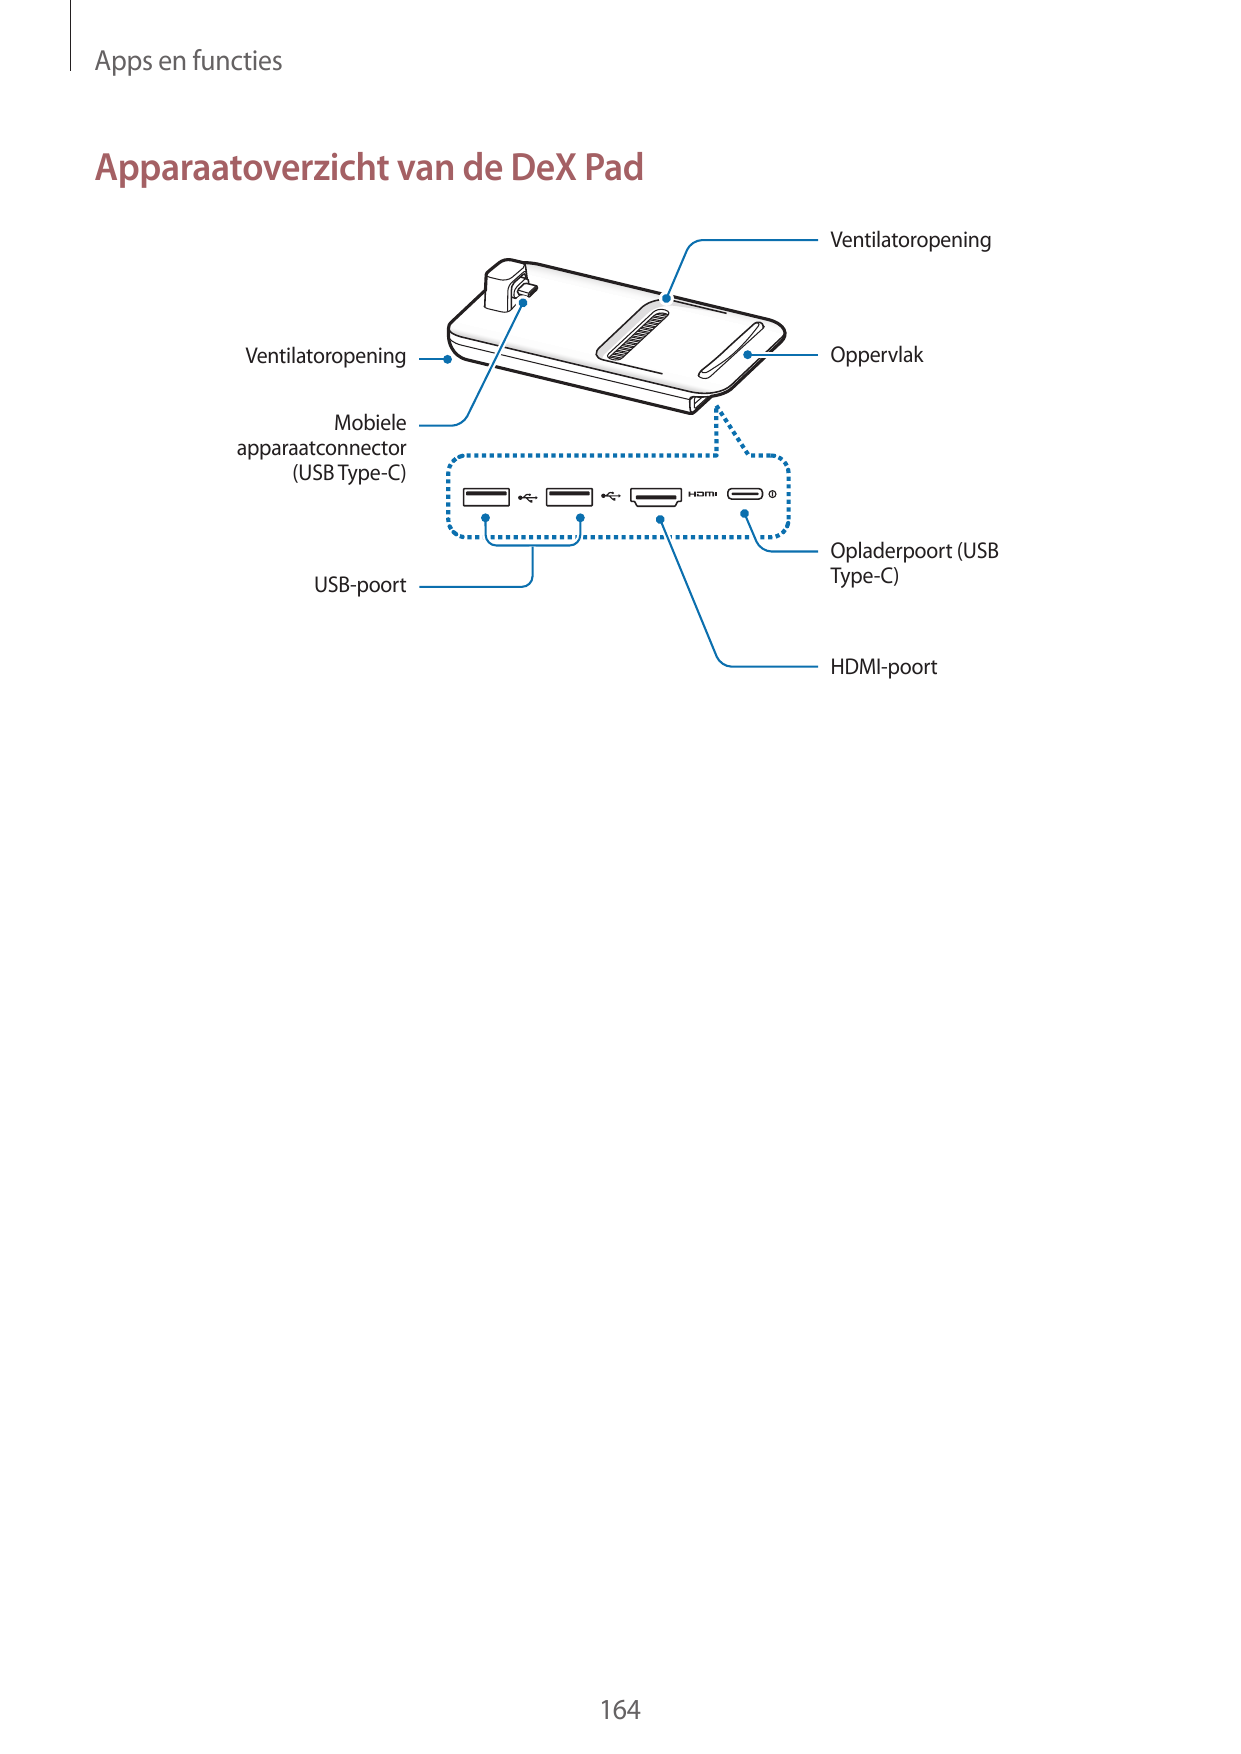 Apps en functiesApparaatoverzicht van de DeX PadVentilatoropeningOppervlakVentilatoropeningMobieleapparaatconnector(USB Type-C)O